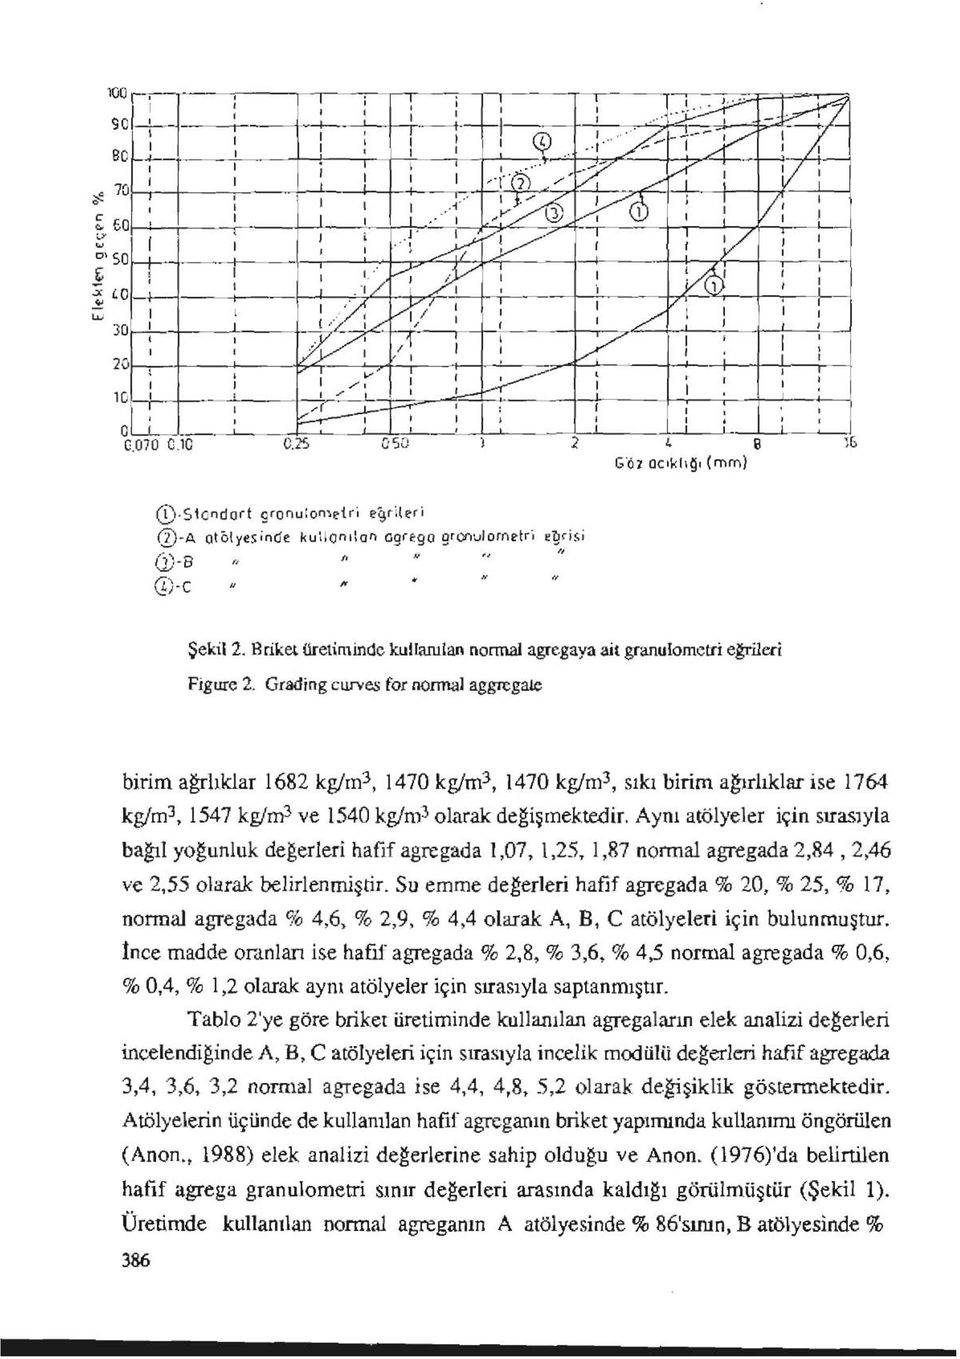 Briket üretiminde kullanılan normal agregaya ail granulometri eğrileri Figüre 2.